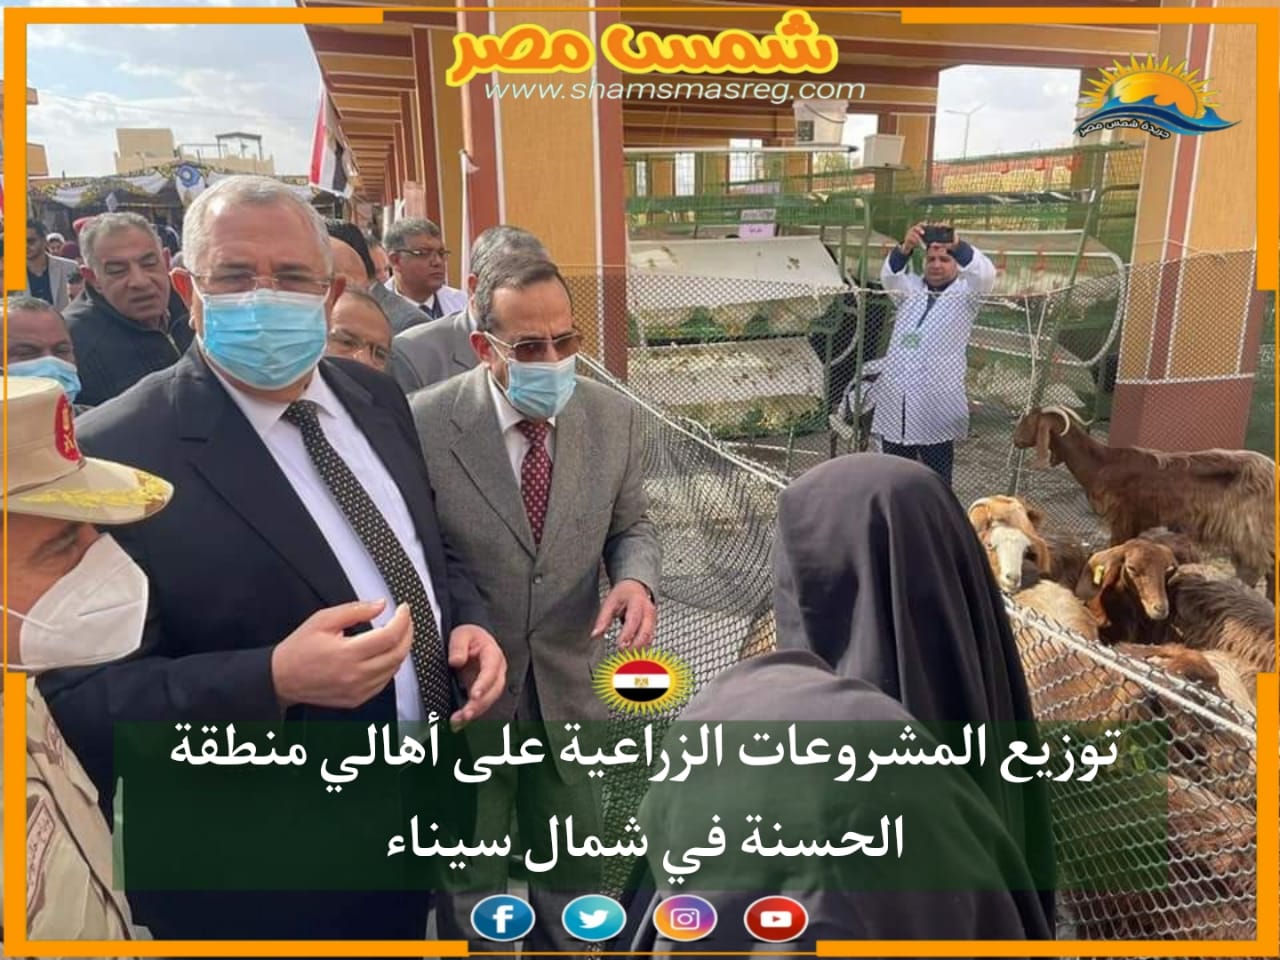 |شمس مصر|.. توزيع المشروعات الزراعية على أهالي منطقة الحسنة في شمال سيناء